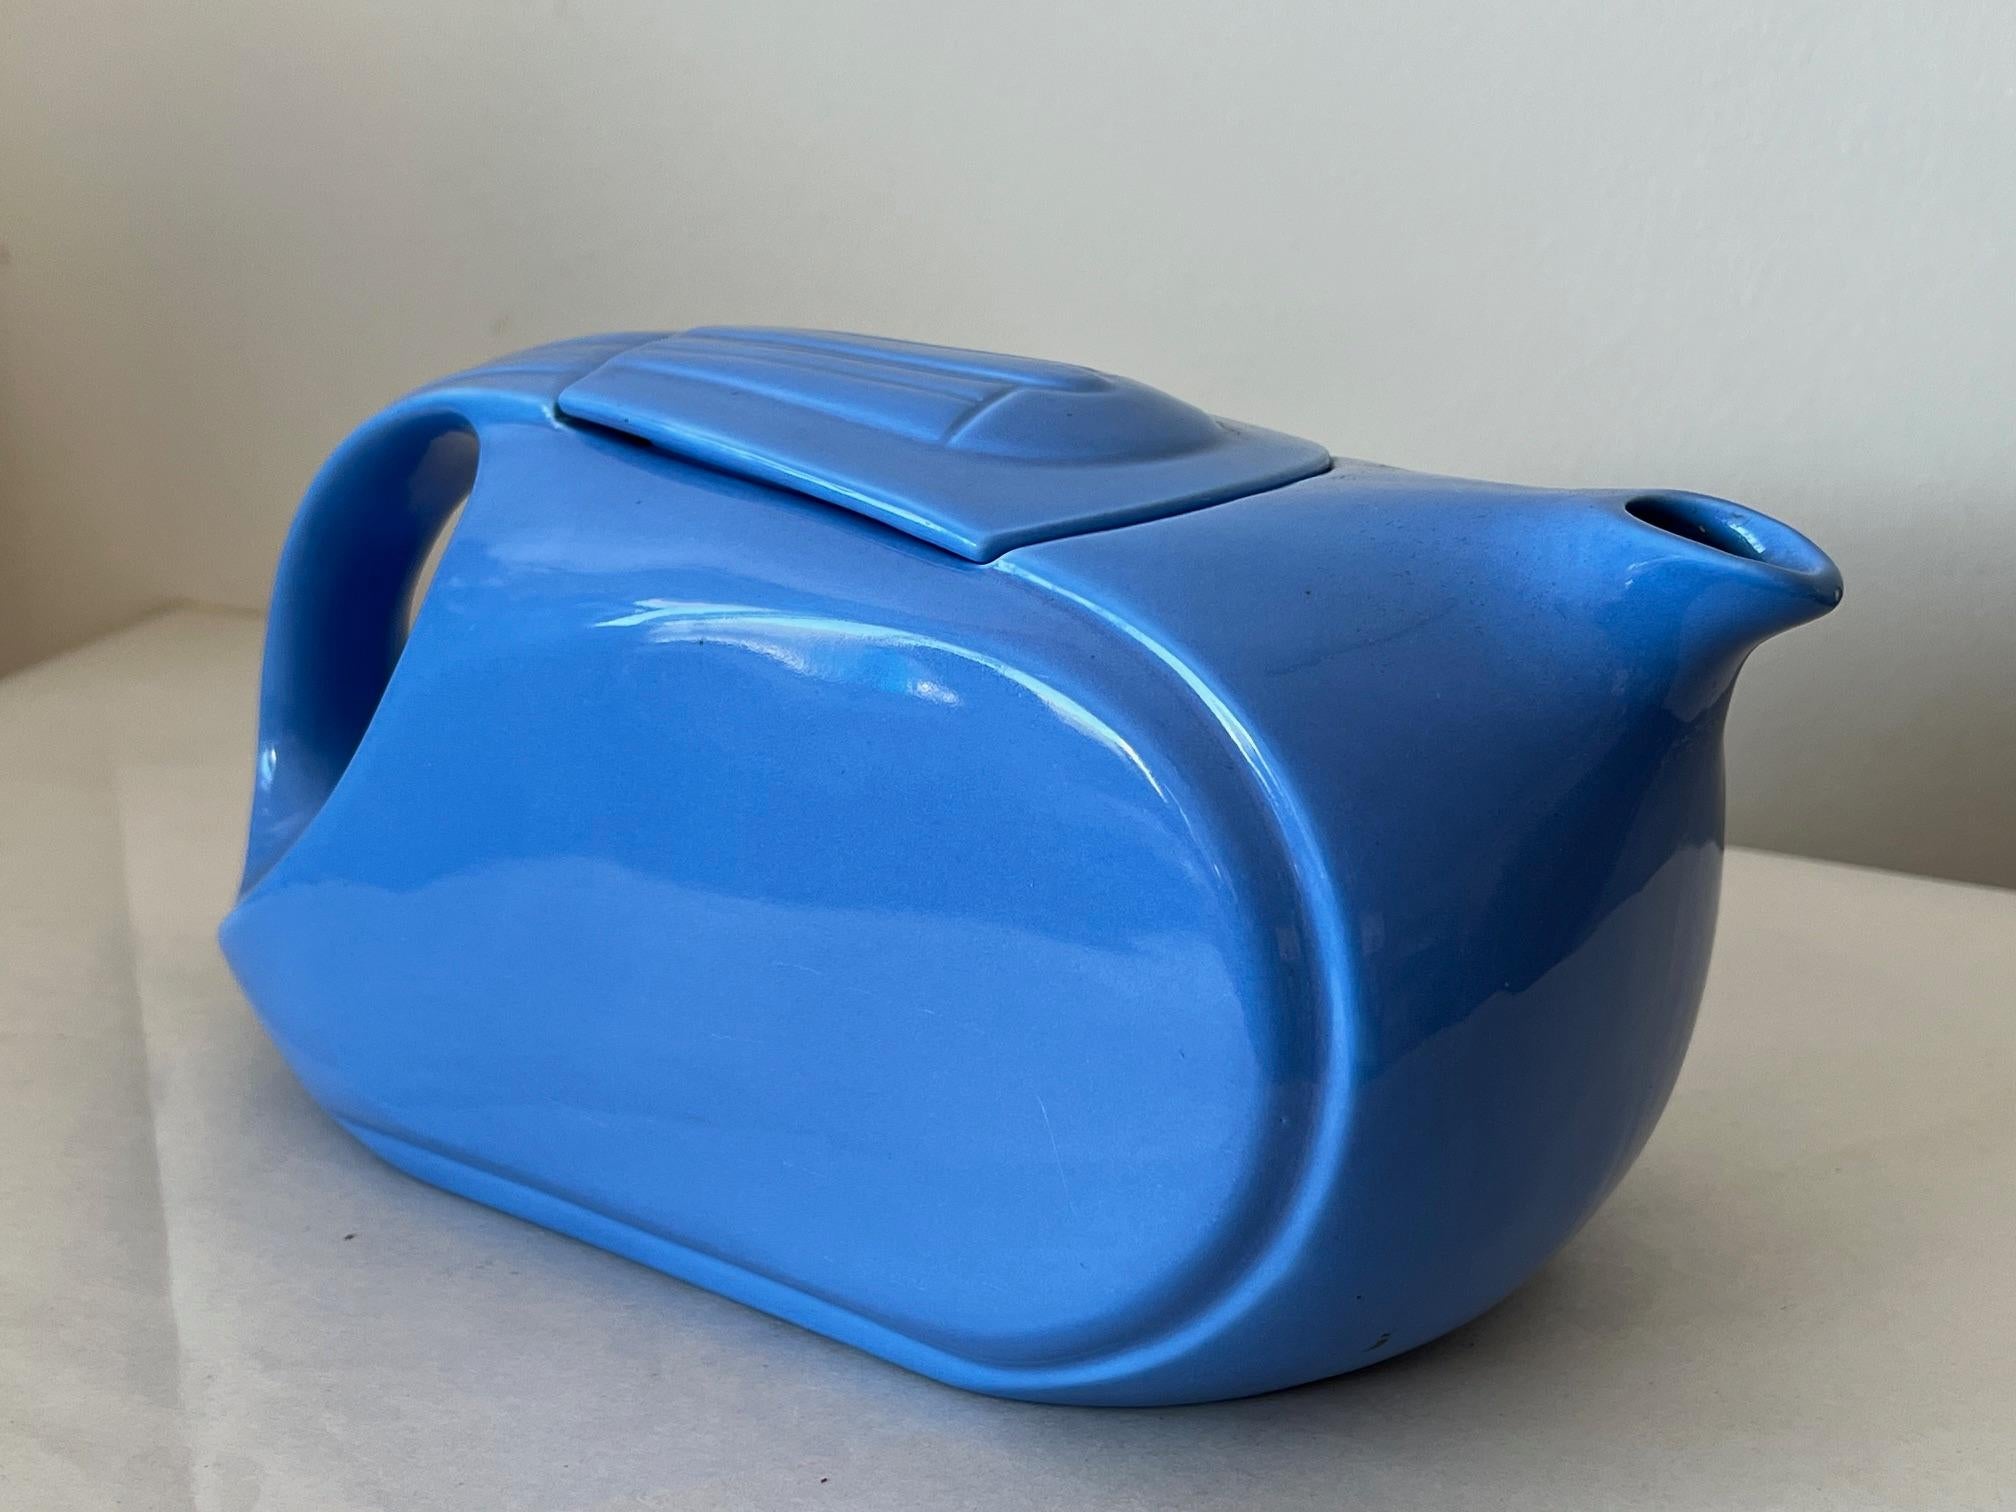 Un art déco  Pichet à couvercle pour réfrigérateur en faïence émaillée bleue de Hall China, fabriqué pour Westinghouse, qui était l'un des principaux fabricants de réfrigérateurs dans les années 1930. Le pichet est profilé avec des lignes épurées